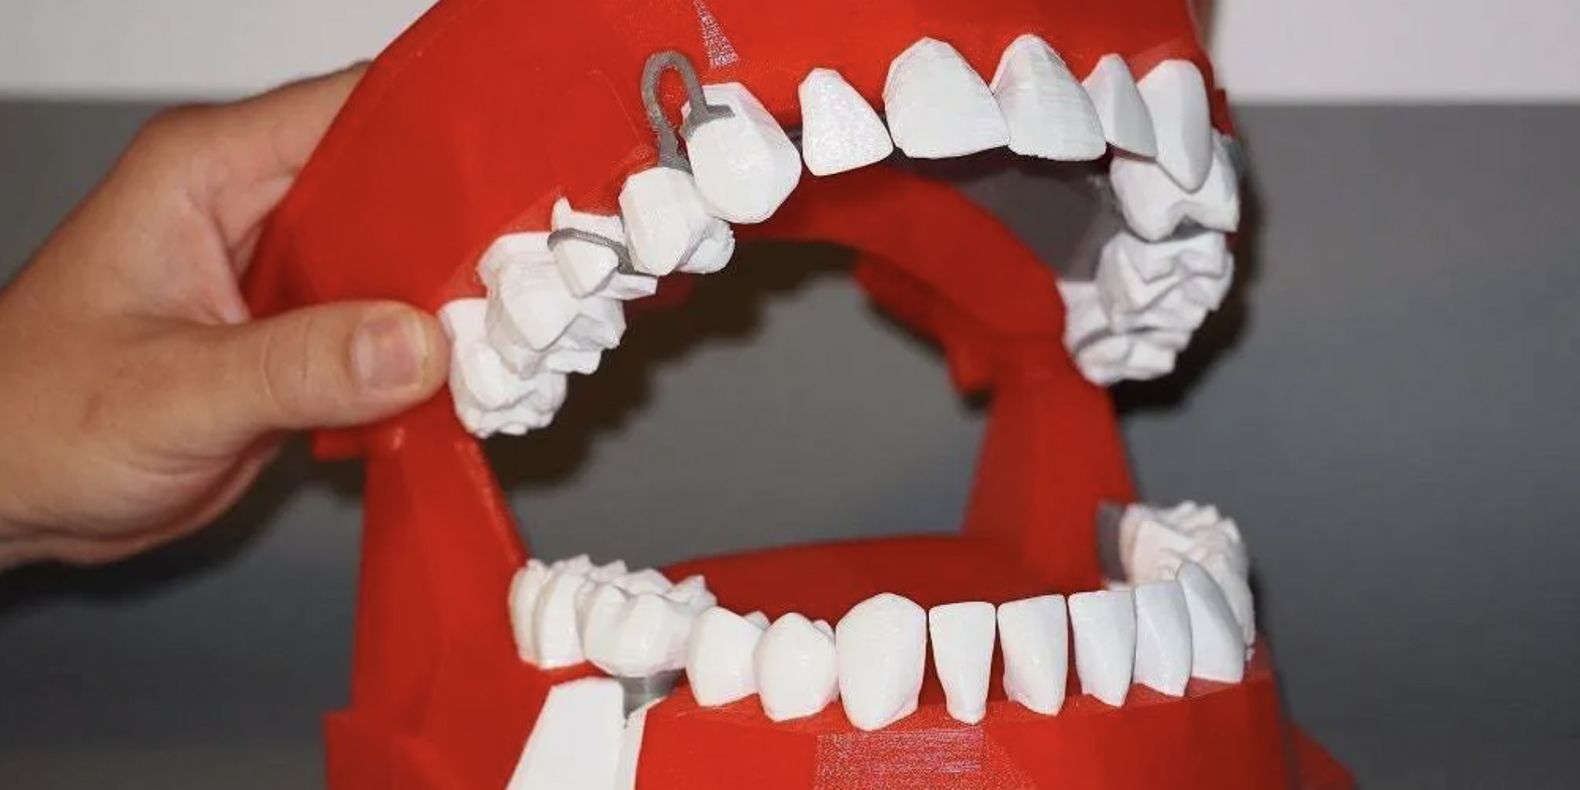 Encuentre aquí una selección de los mejores modelos 3D de archivos dentales, odontológicos y de ortodoncia imprimibles en 3D